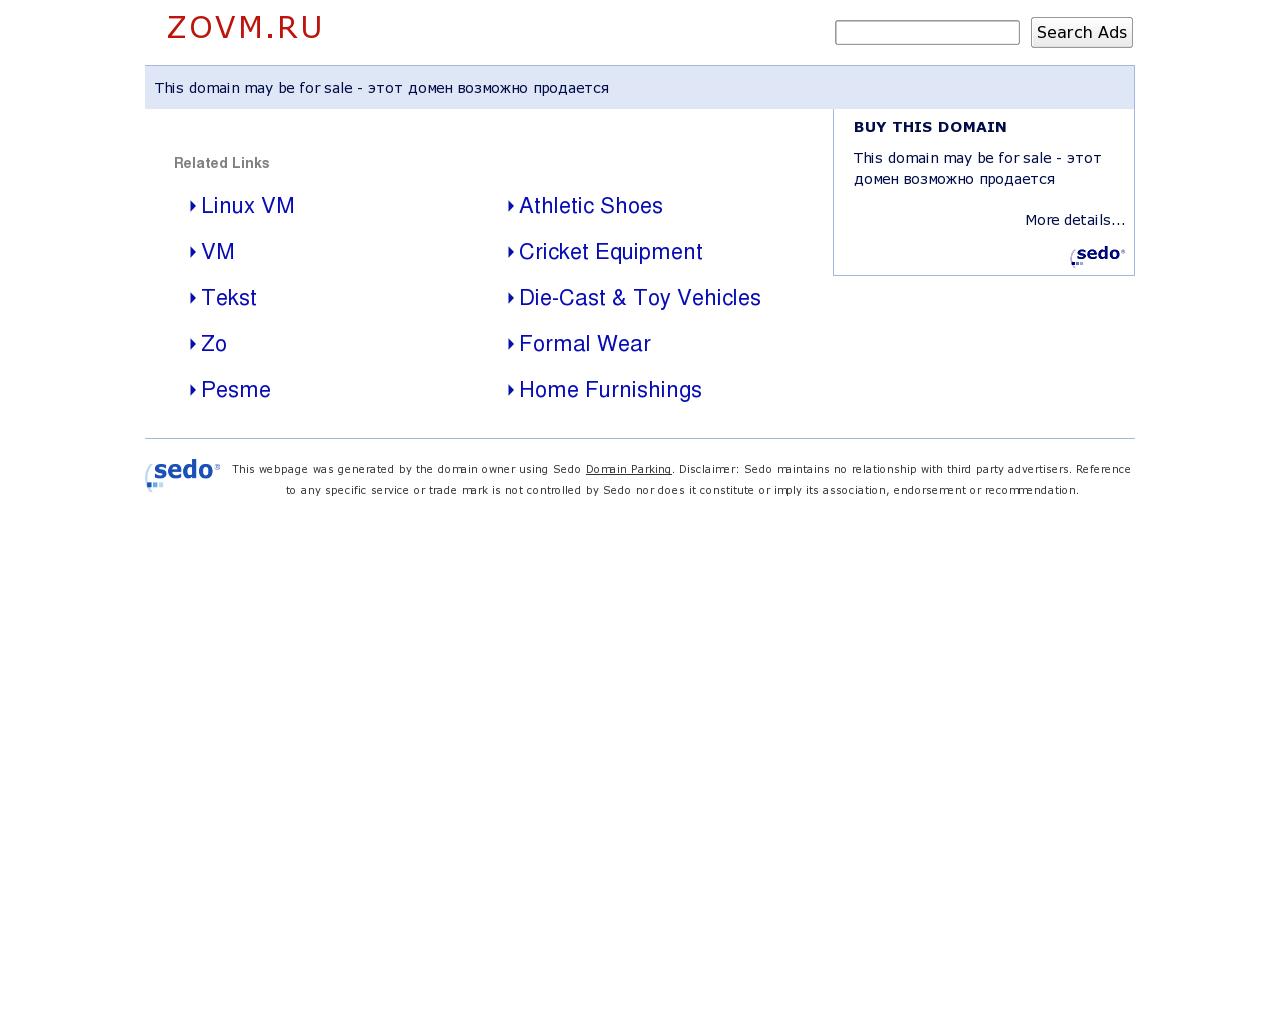 Изображение сайта zovm.ru в разрешении 1280x1024